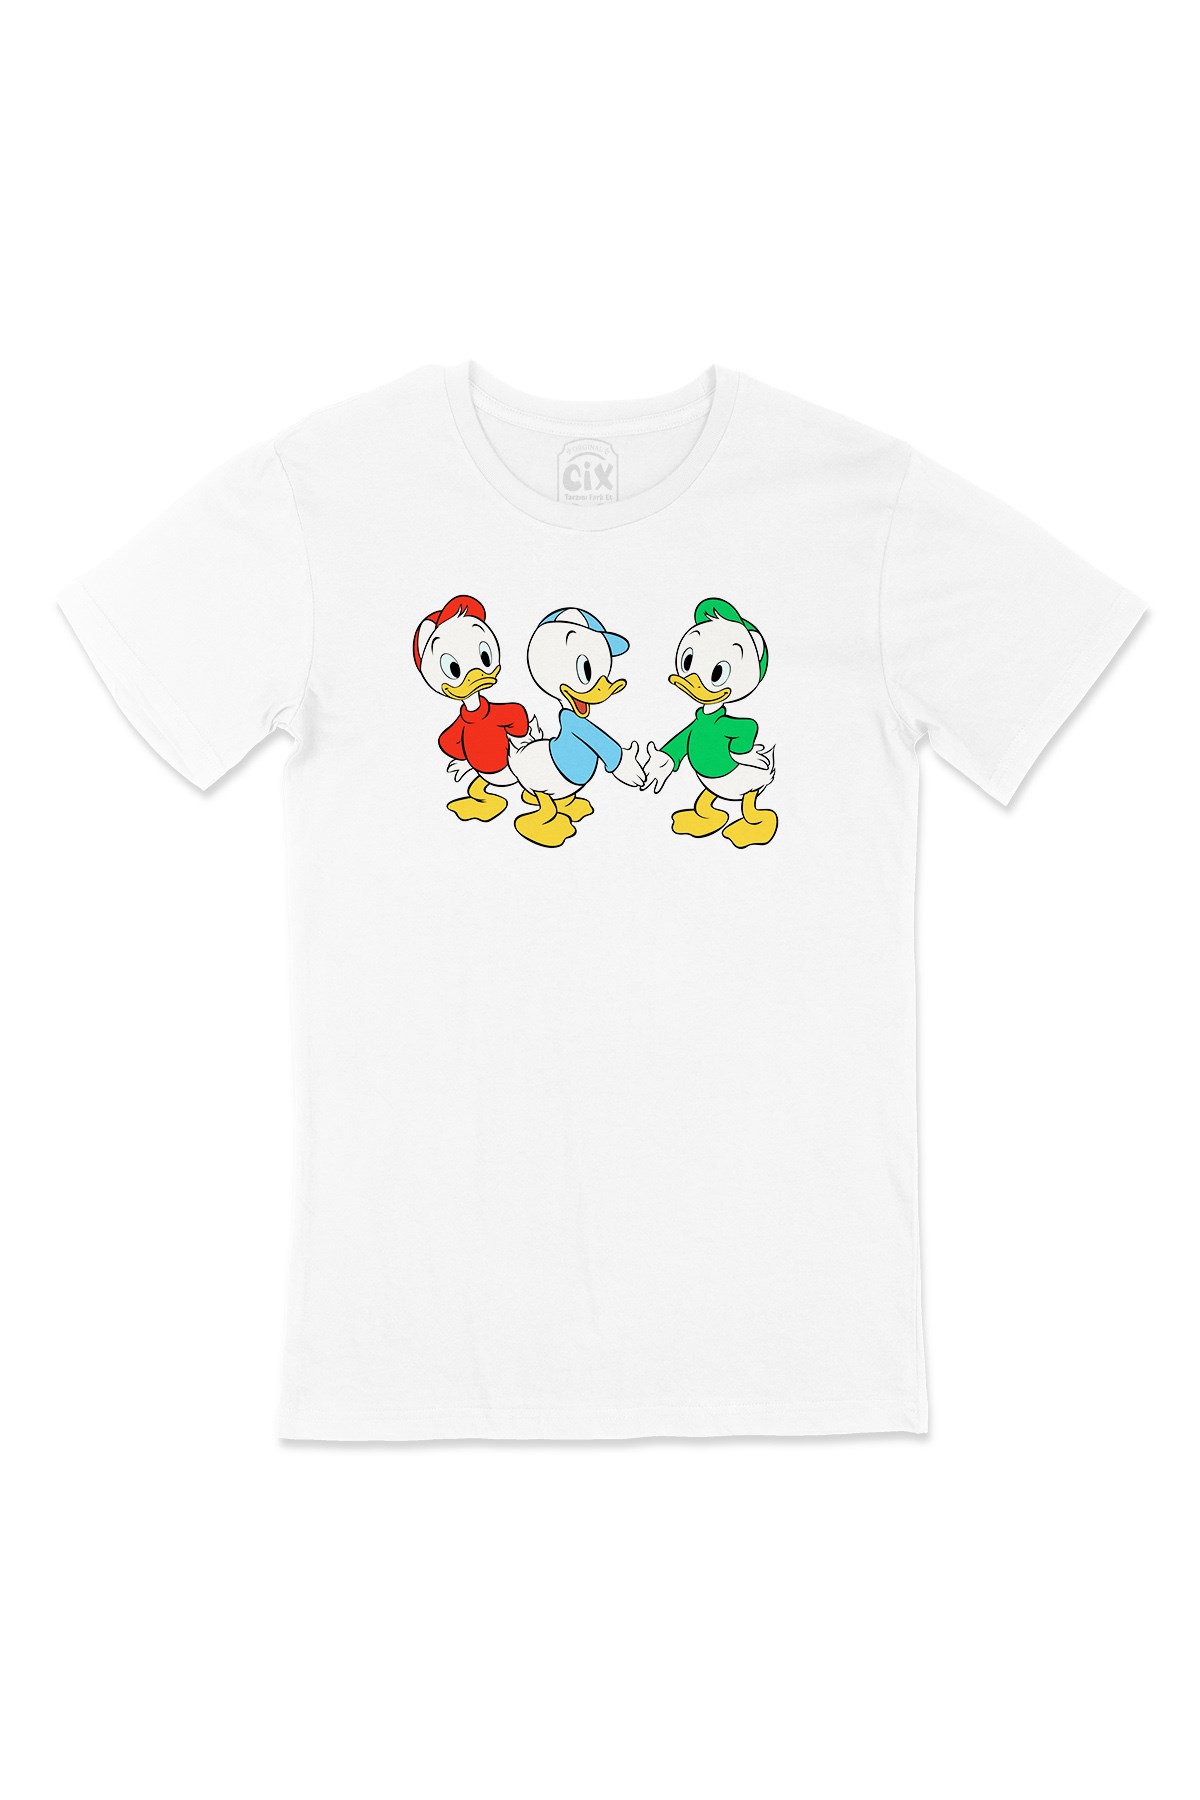 Cix Bebek Ördekler Tişört - Ücretsiz Kargo